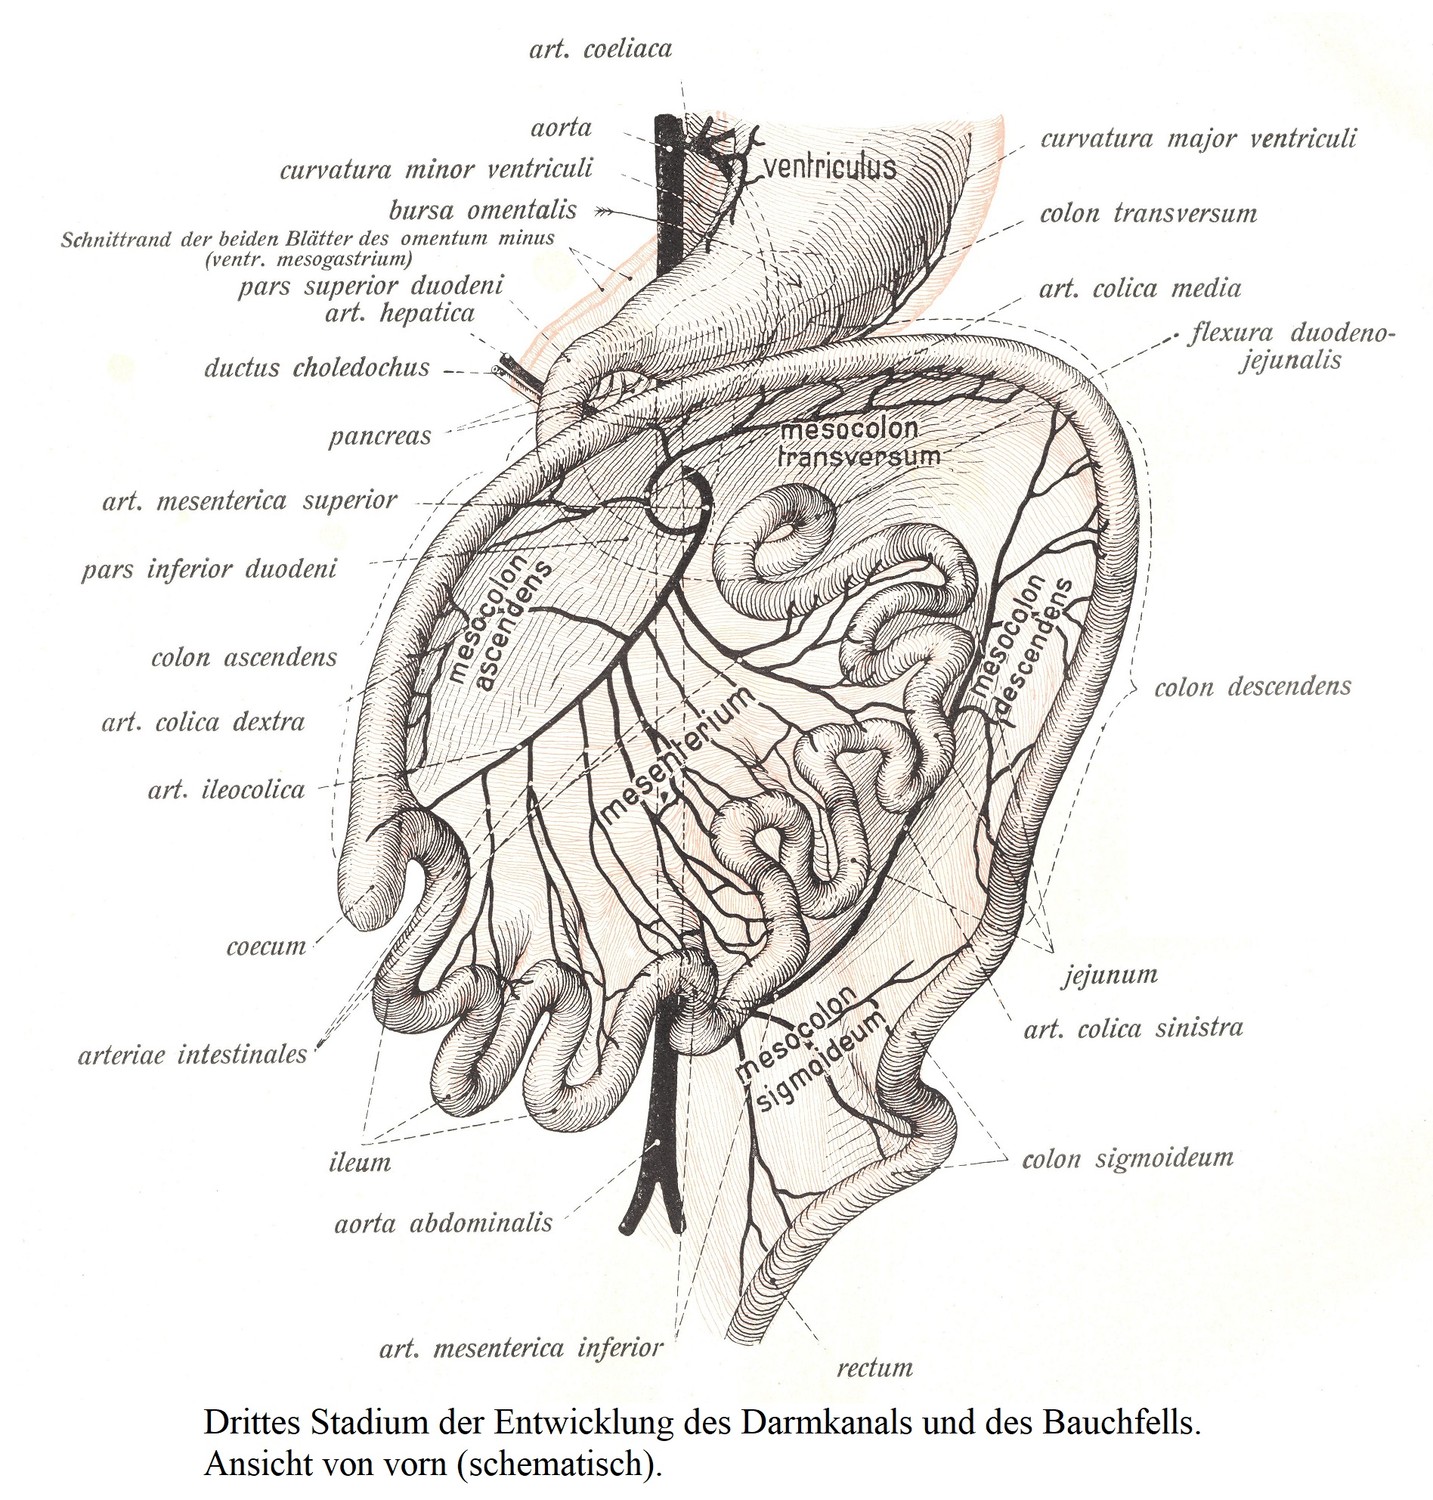 Третья стадия развития кишечного канала и брюшины. Вид спереди (схема).